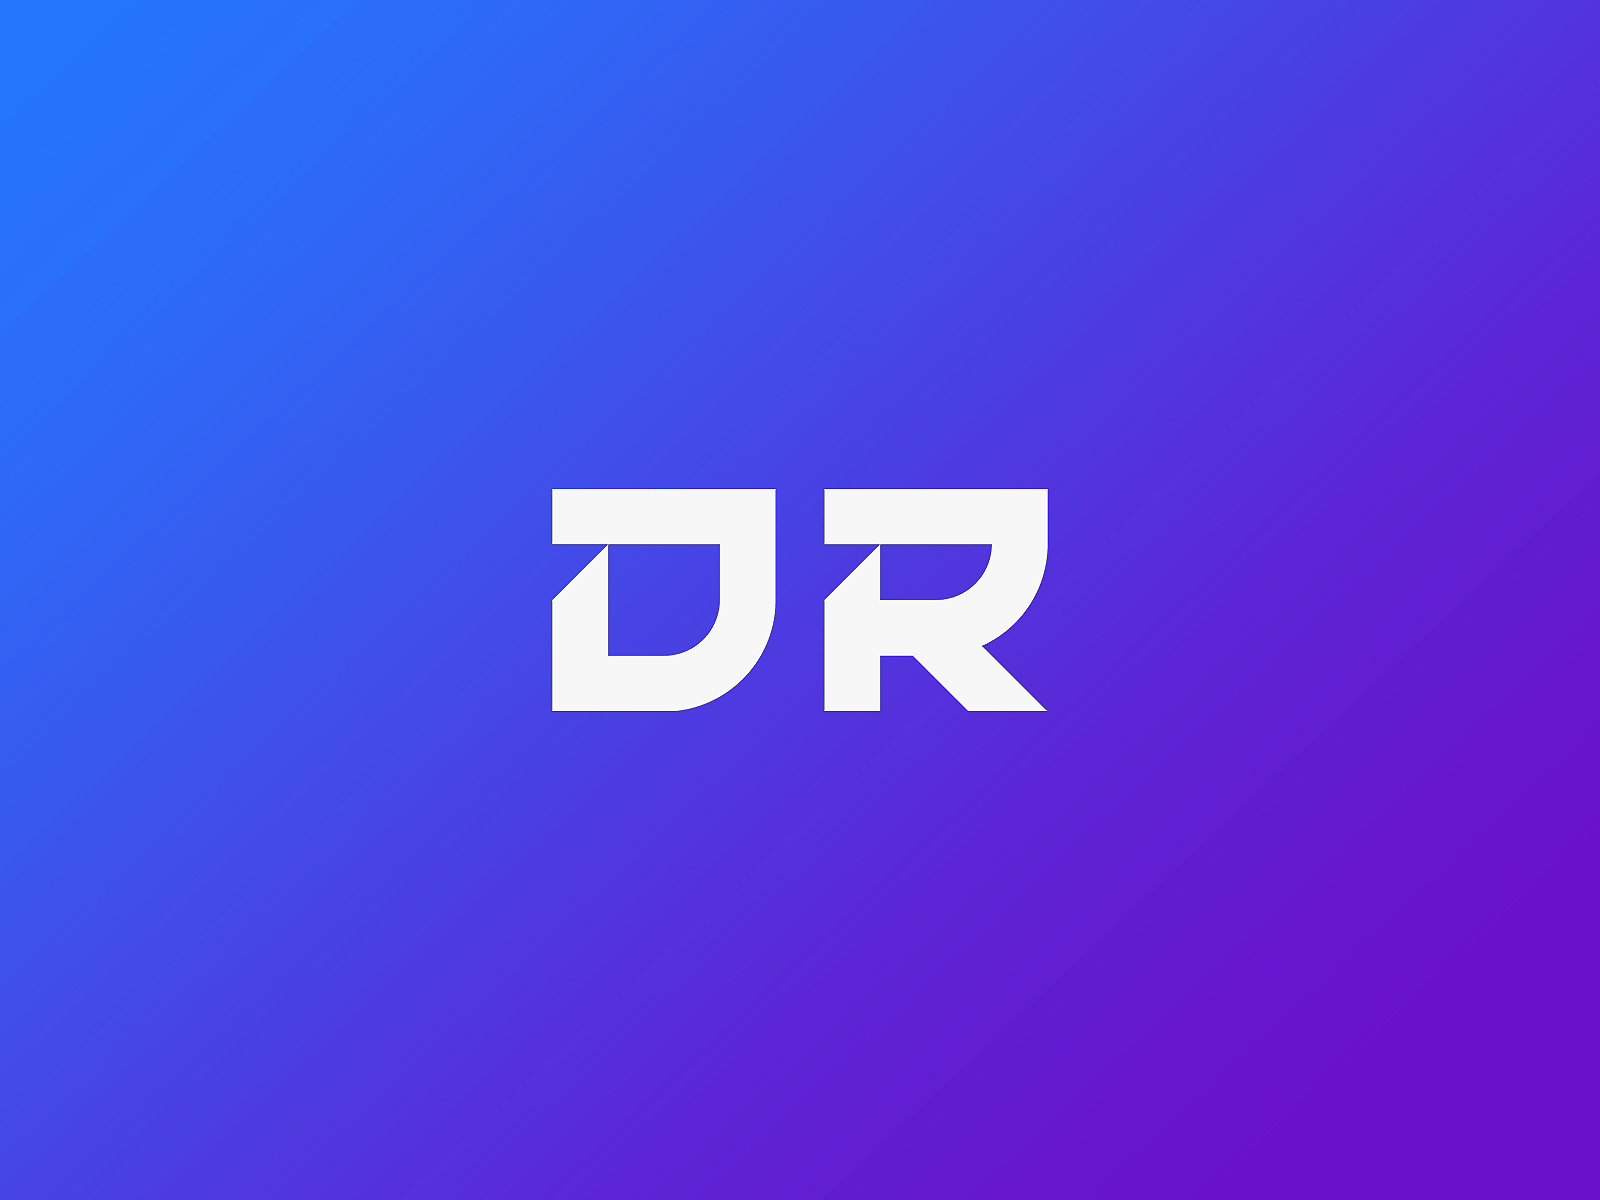 D+R logo design brand logo branding clean logo colorful logo gradient logo logo logo branding logo design logo mark minimal logo modern logo